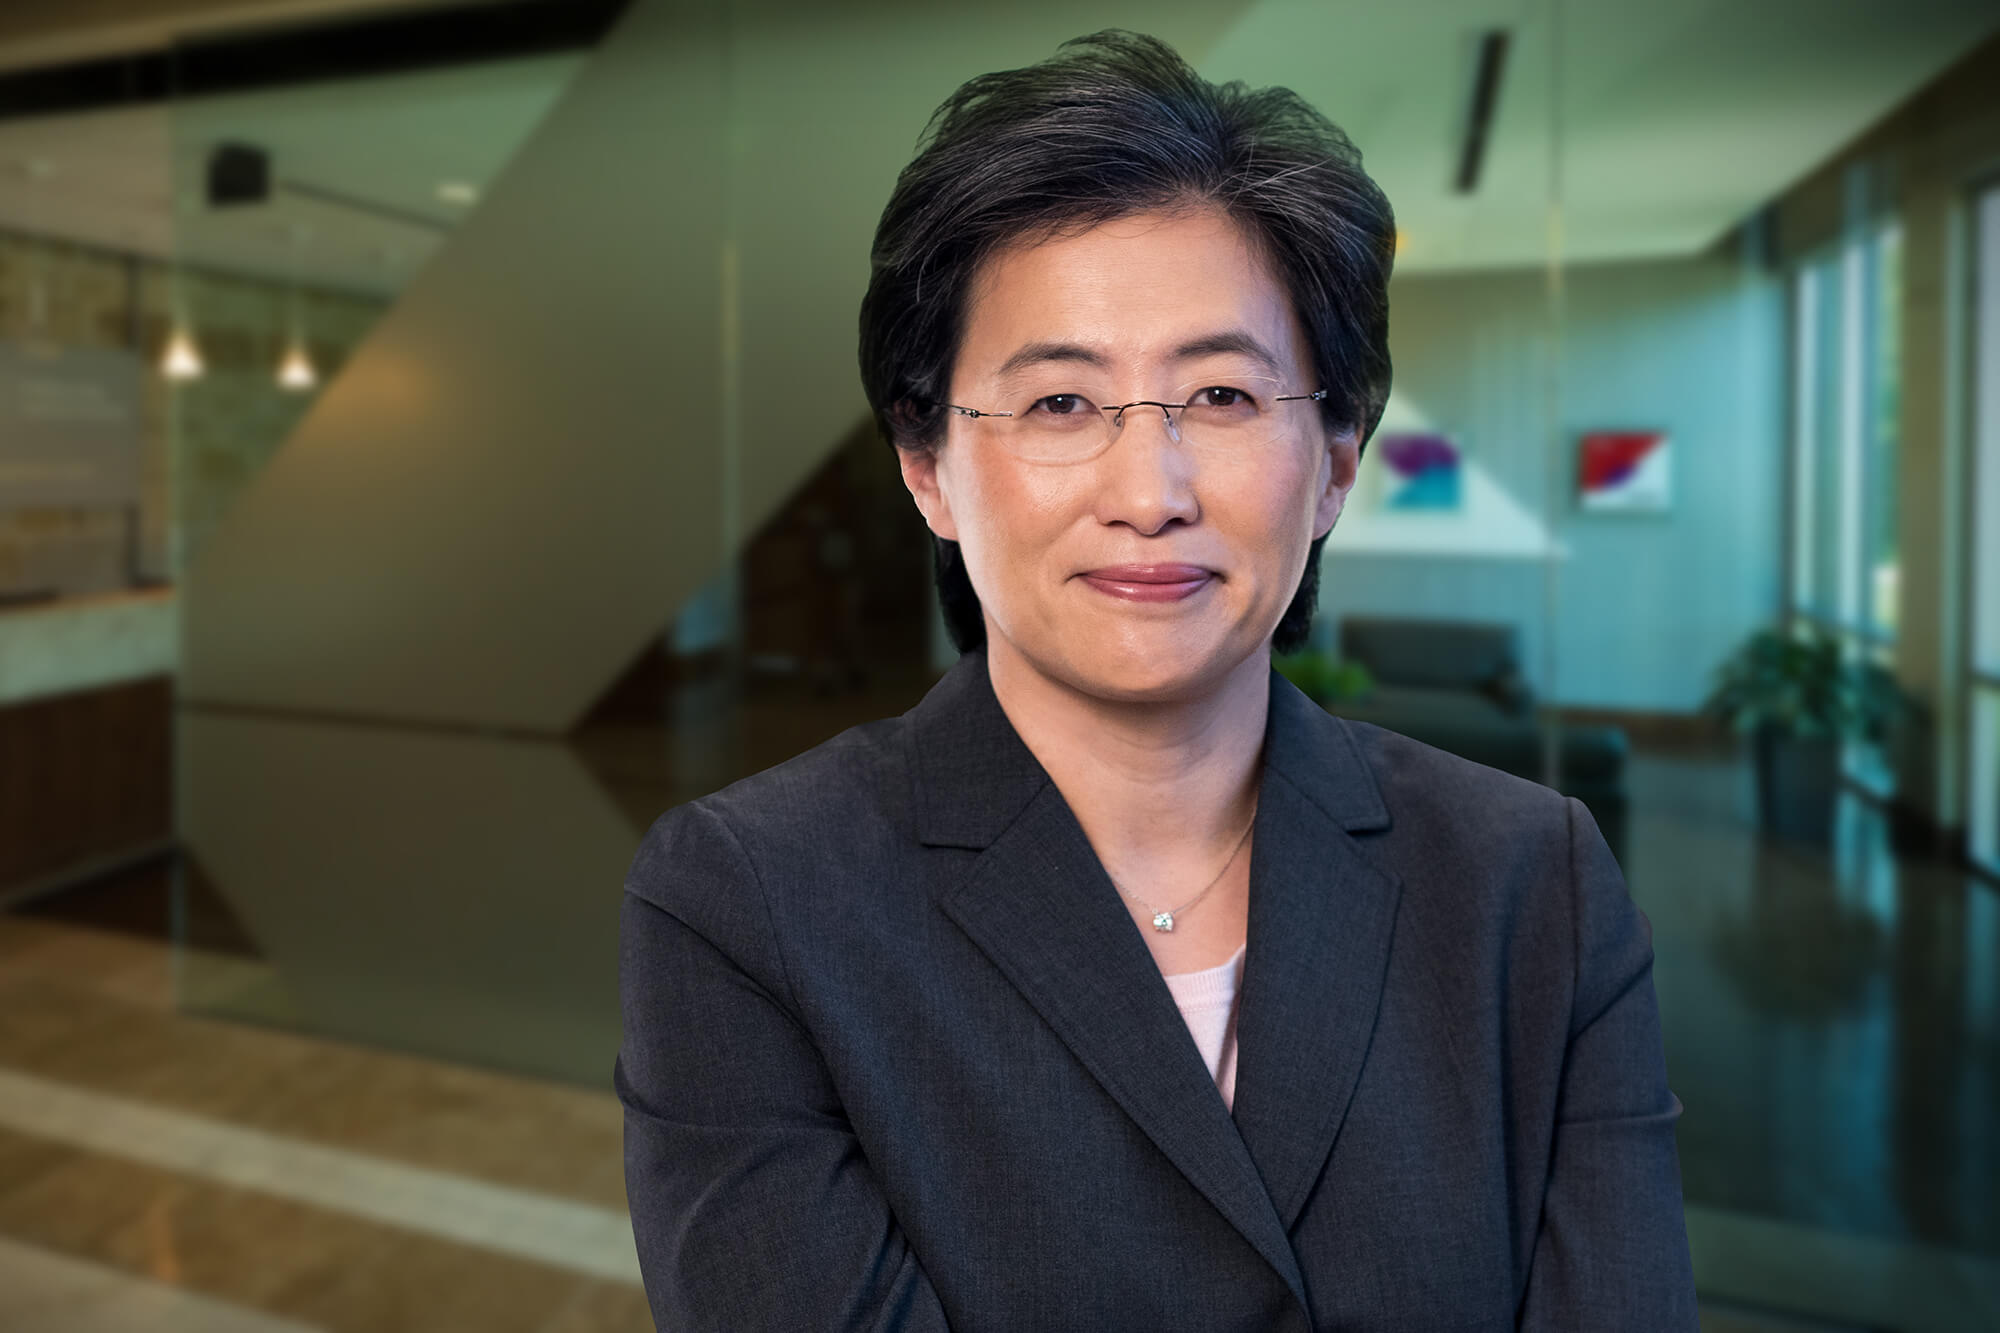 AMD boss Lisa Su tops highest-paid CEO list